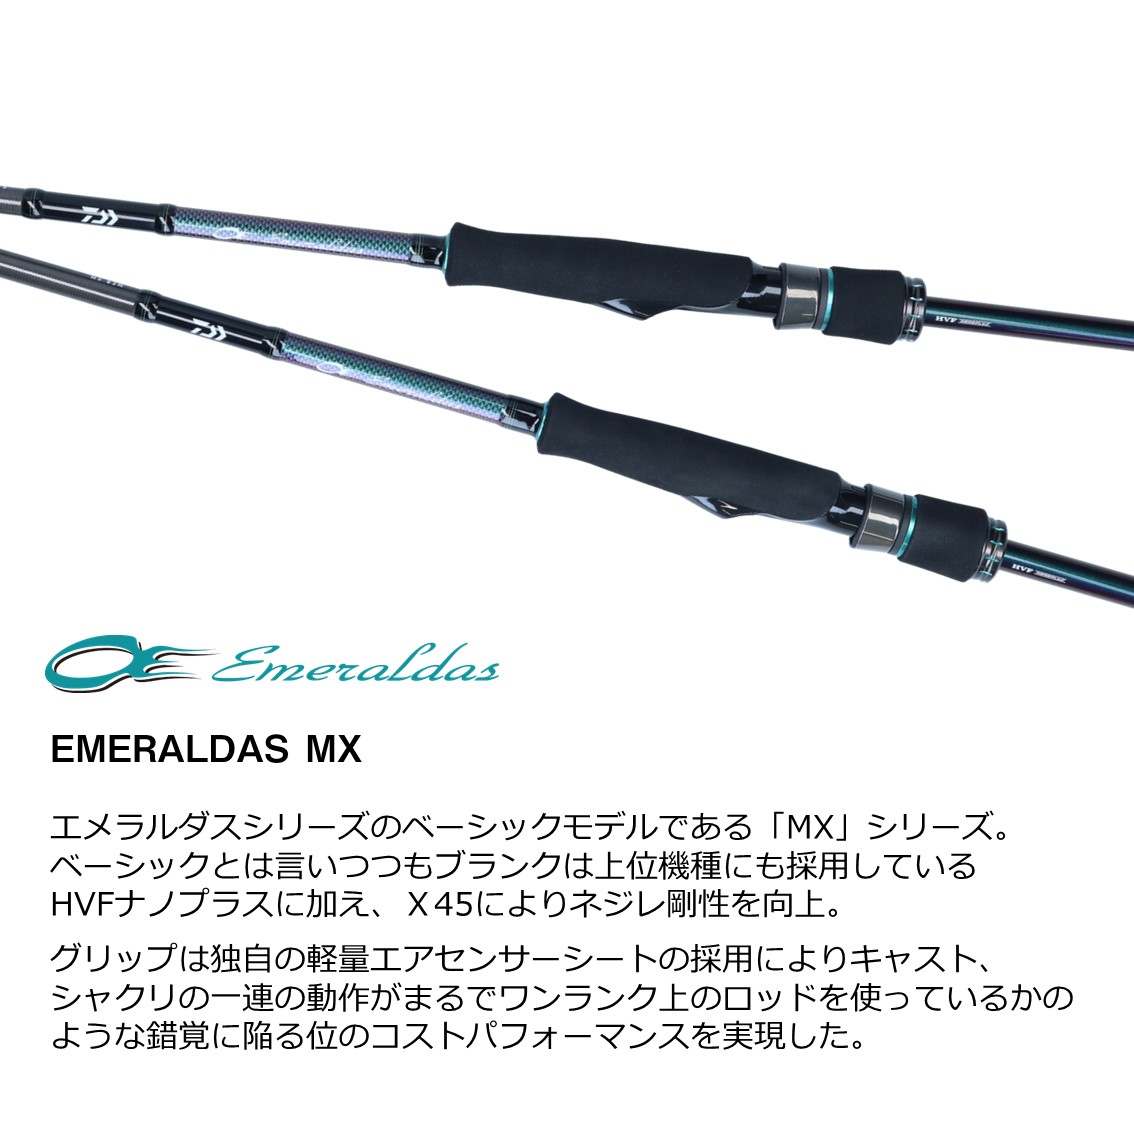 ダイワ 21 エメラルダスMX 83ML N (エギングロッド) - 釣り具の販売 